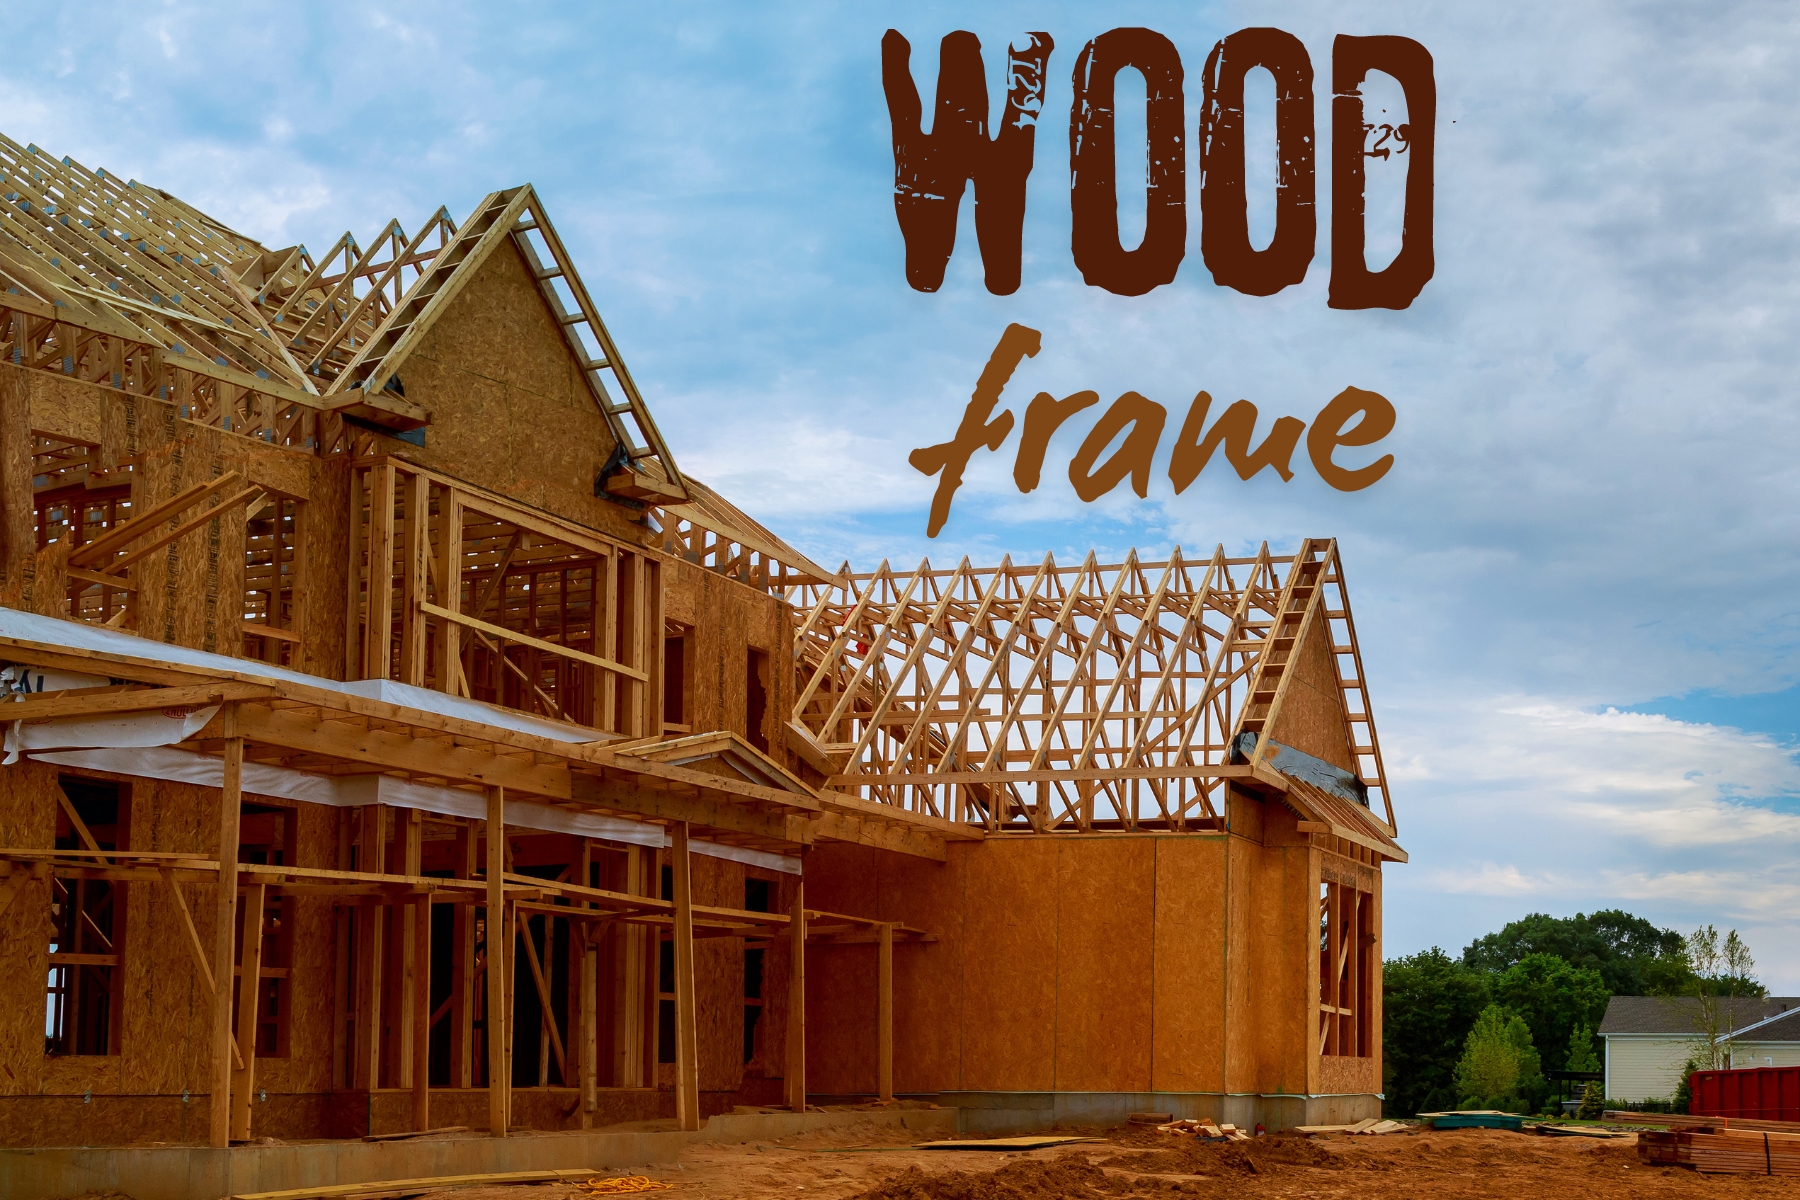 Descubra como a técnica de construção em wood frame está transformando a indústria da construção civil promovendo a sustentabilidade.